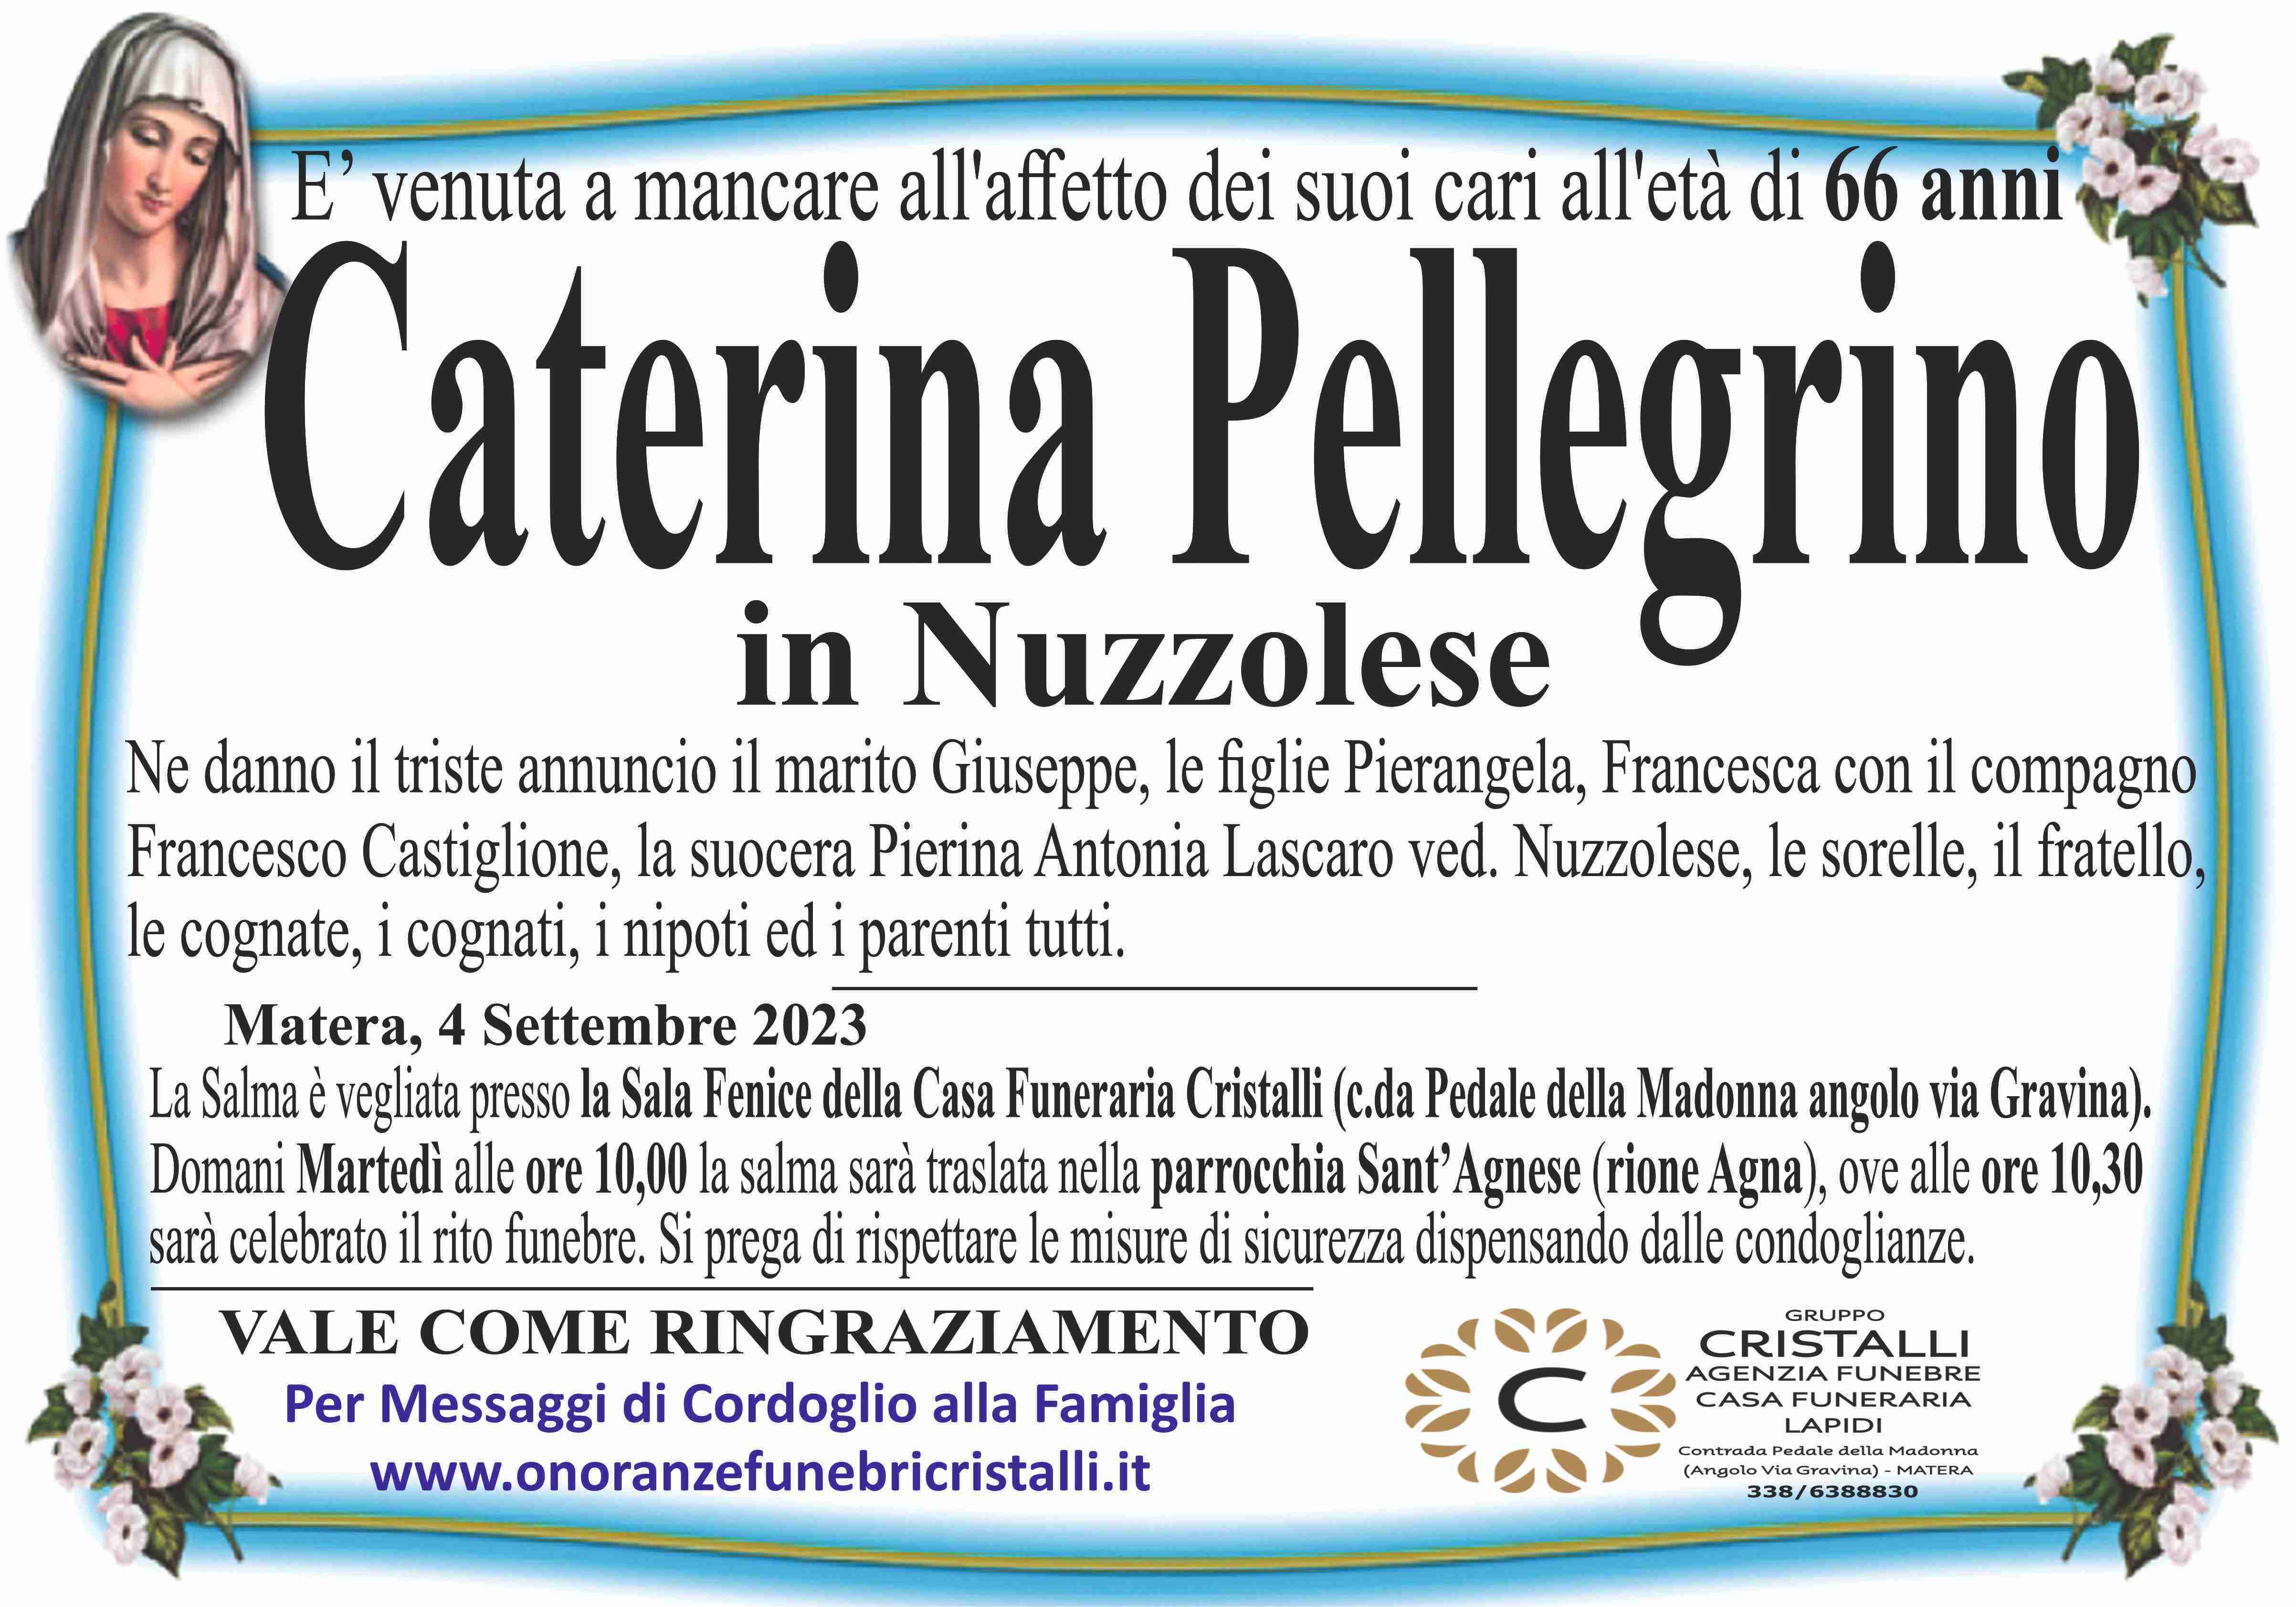 Caterina Pellegrino